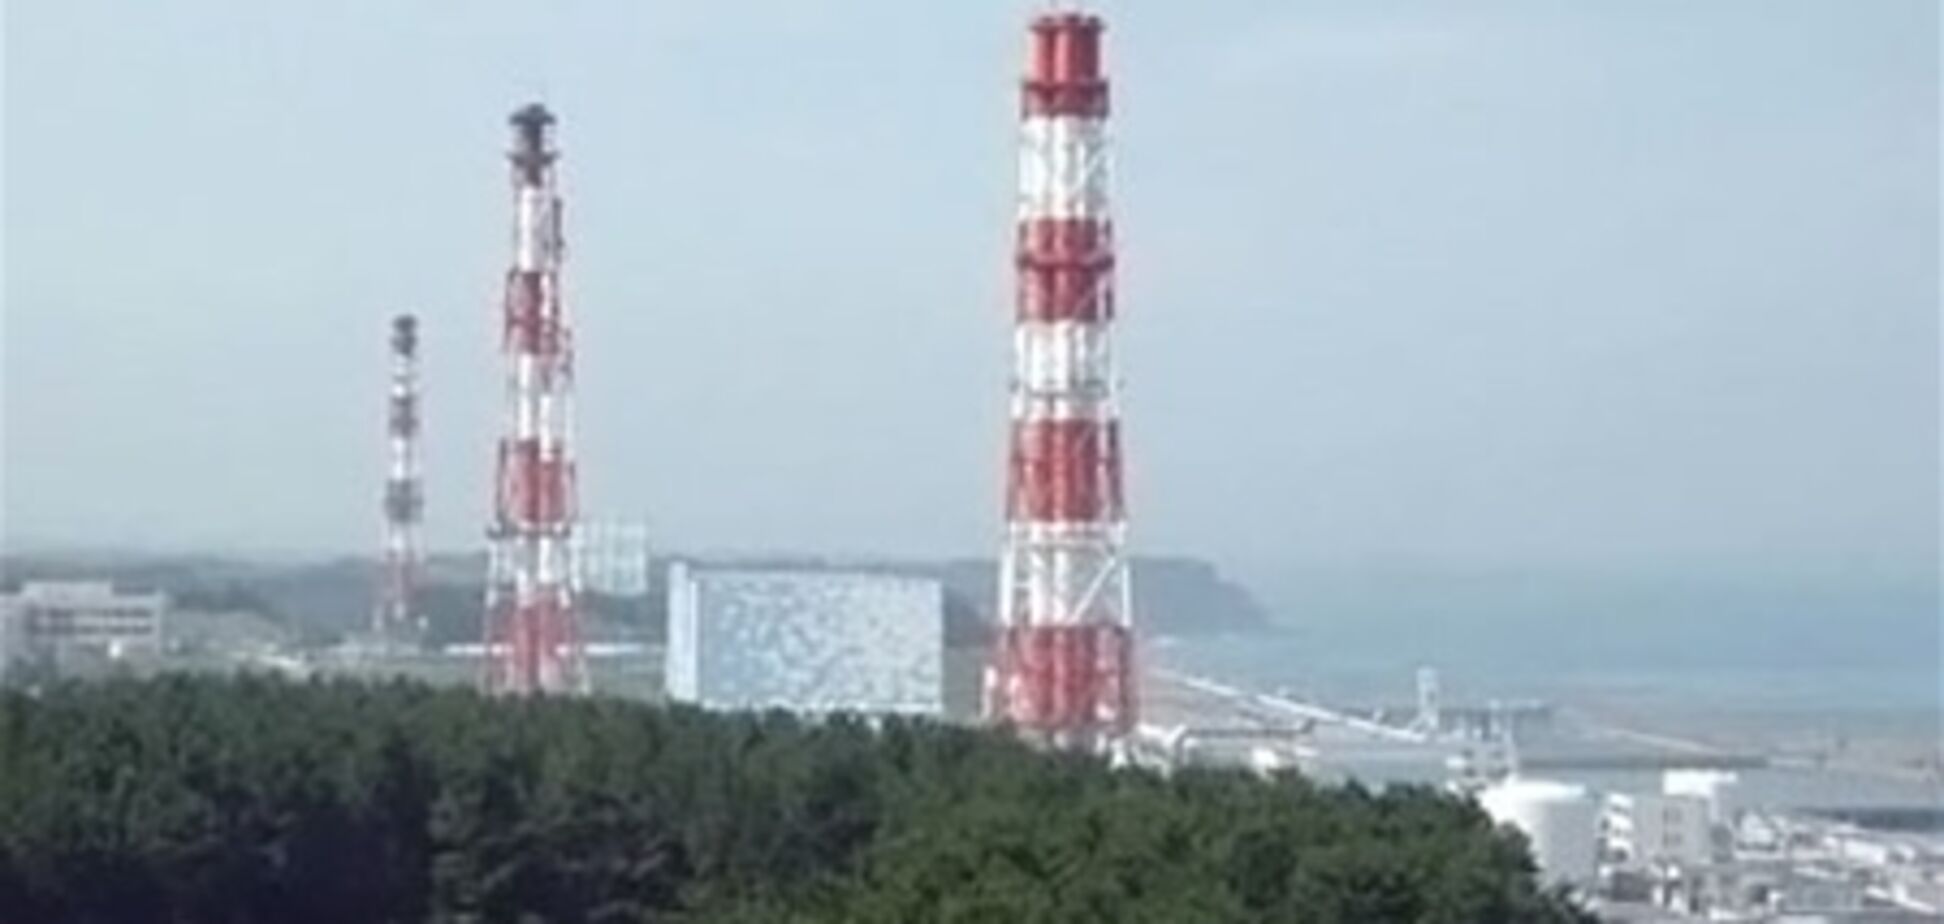 Як відбулася аварія на 'Фукусімі'? Деталі і подробиці в картинках